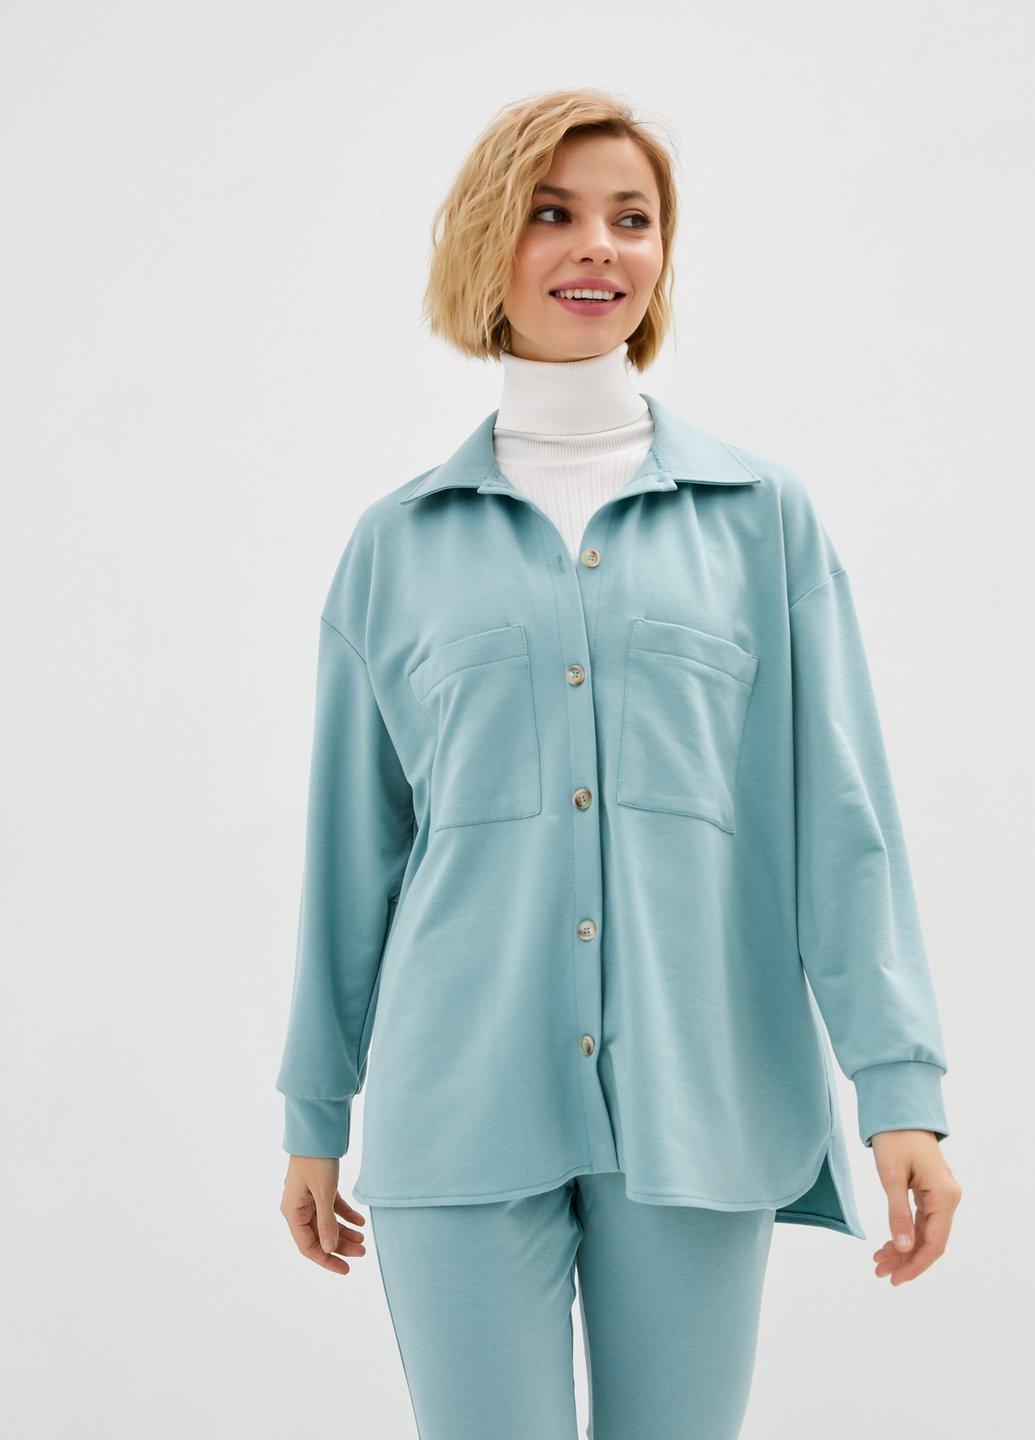 Купить Рубашка женская трикотажная оверсайз Merlini Йорк 200000063 - Зелёный, 42-44 в интернет-магазине